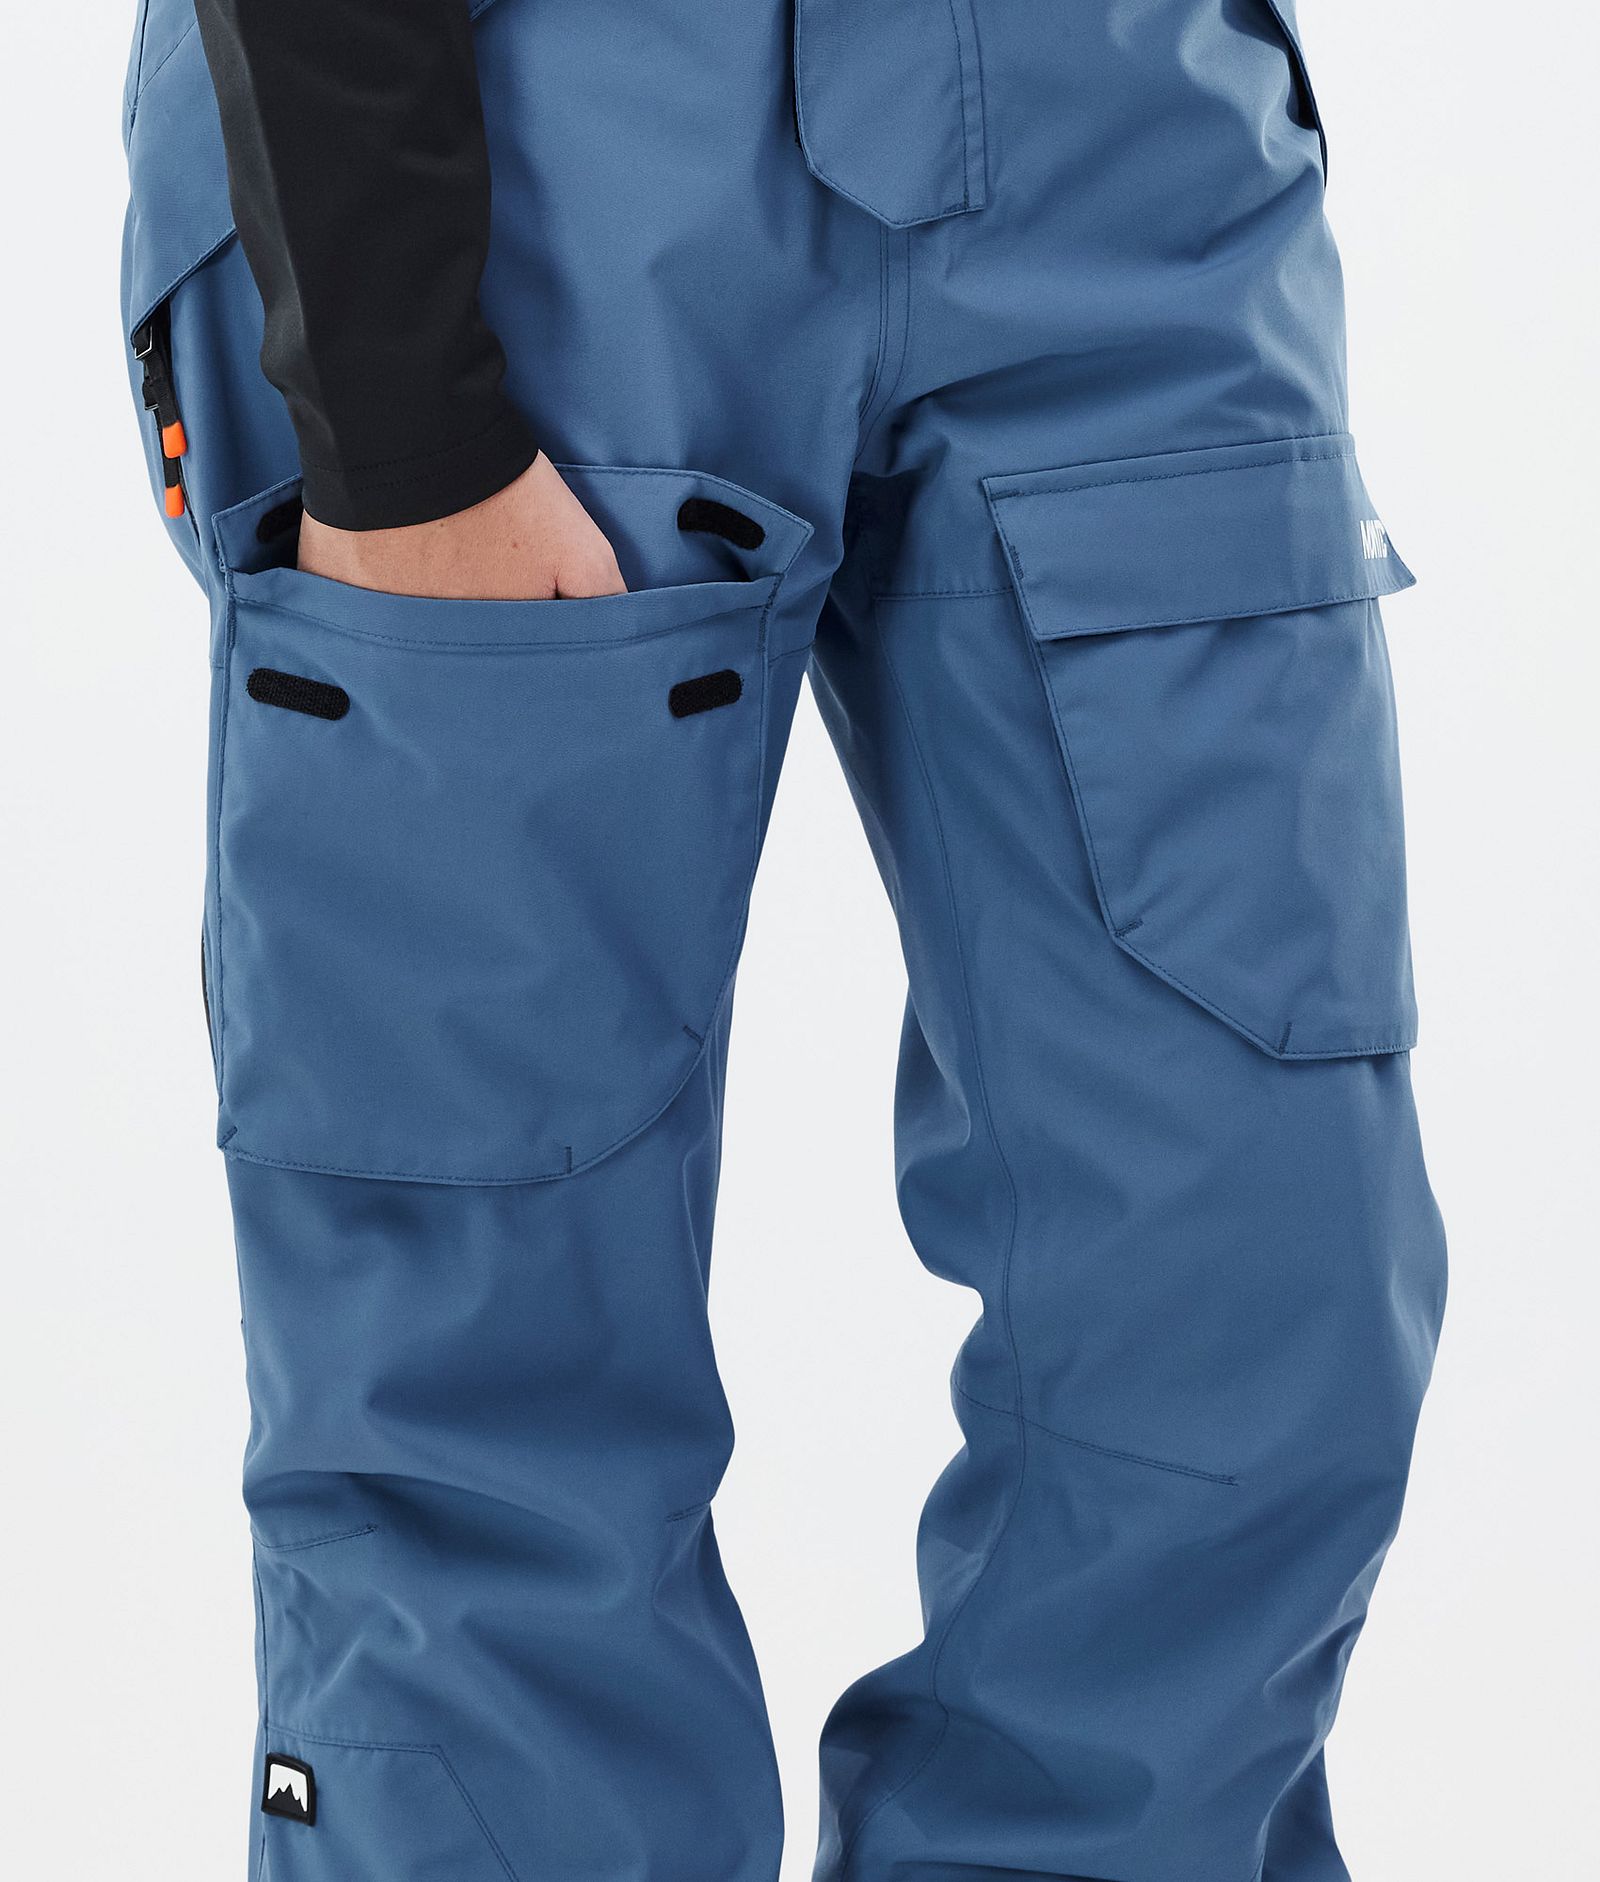 Montec Fawk W Pantalon de Snowboard Femme Blue Steel